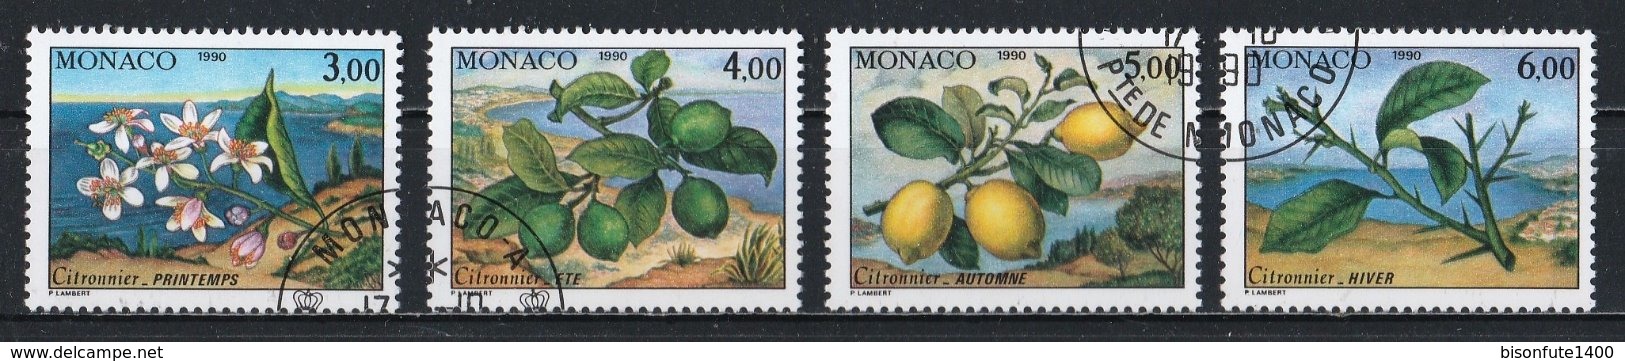 Monaco 1990 : Timbres Yvert Et Tellier N° 1749 - 1750 - 1751 Et 1752 Oblitérés. - Usados